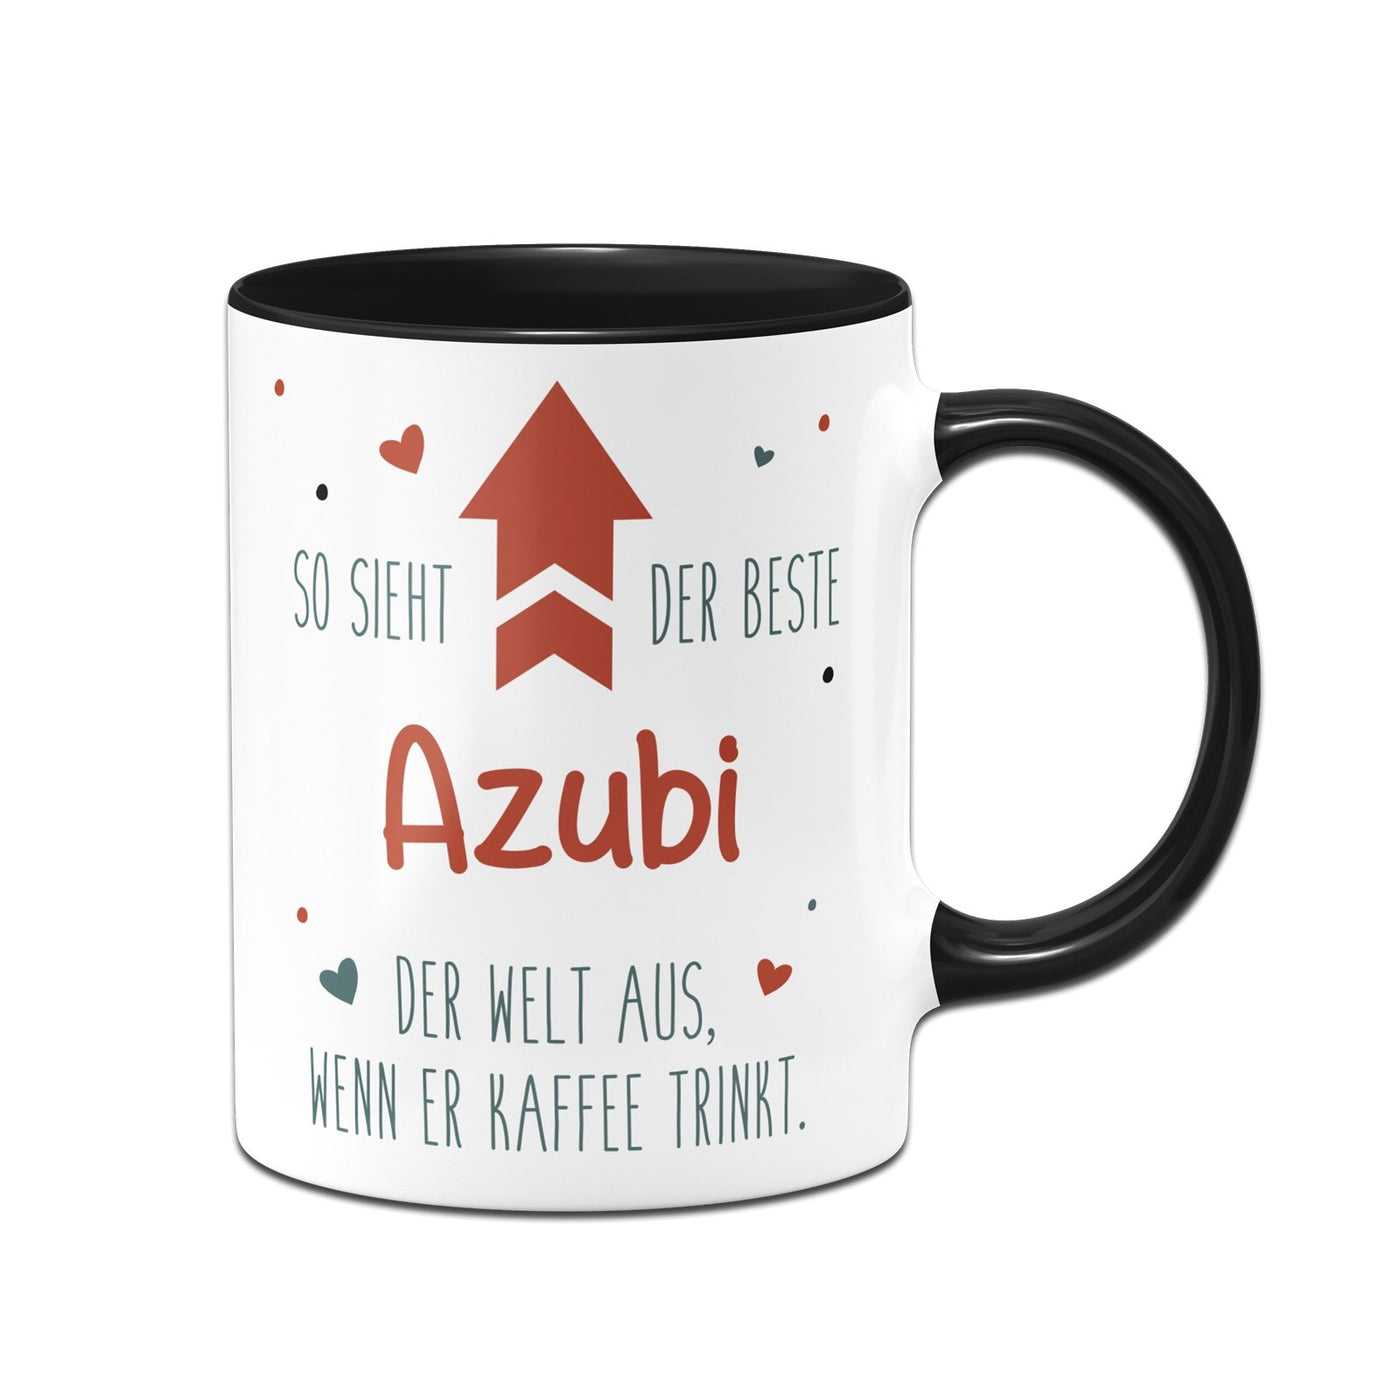 Bild: Tasse - So sieht der beste Azubi der Welt aus, wenn er Kaffee trinkt. Geschenkidee